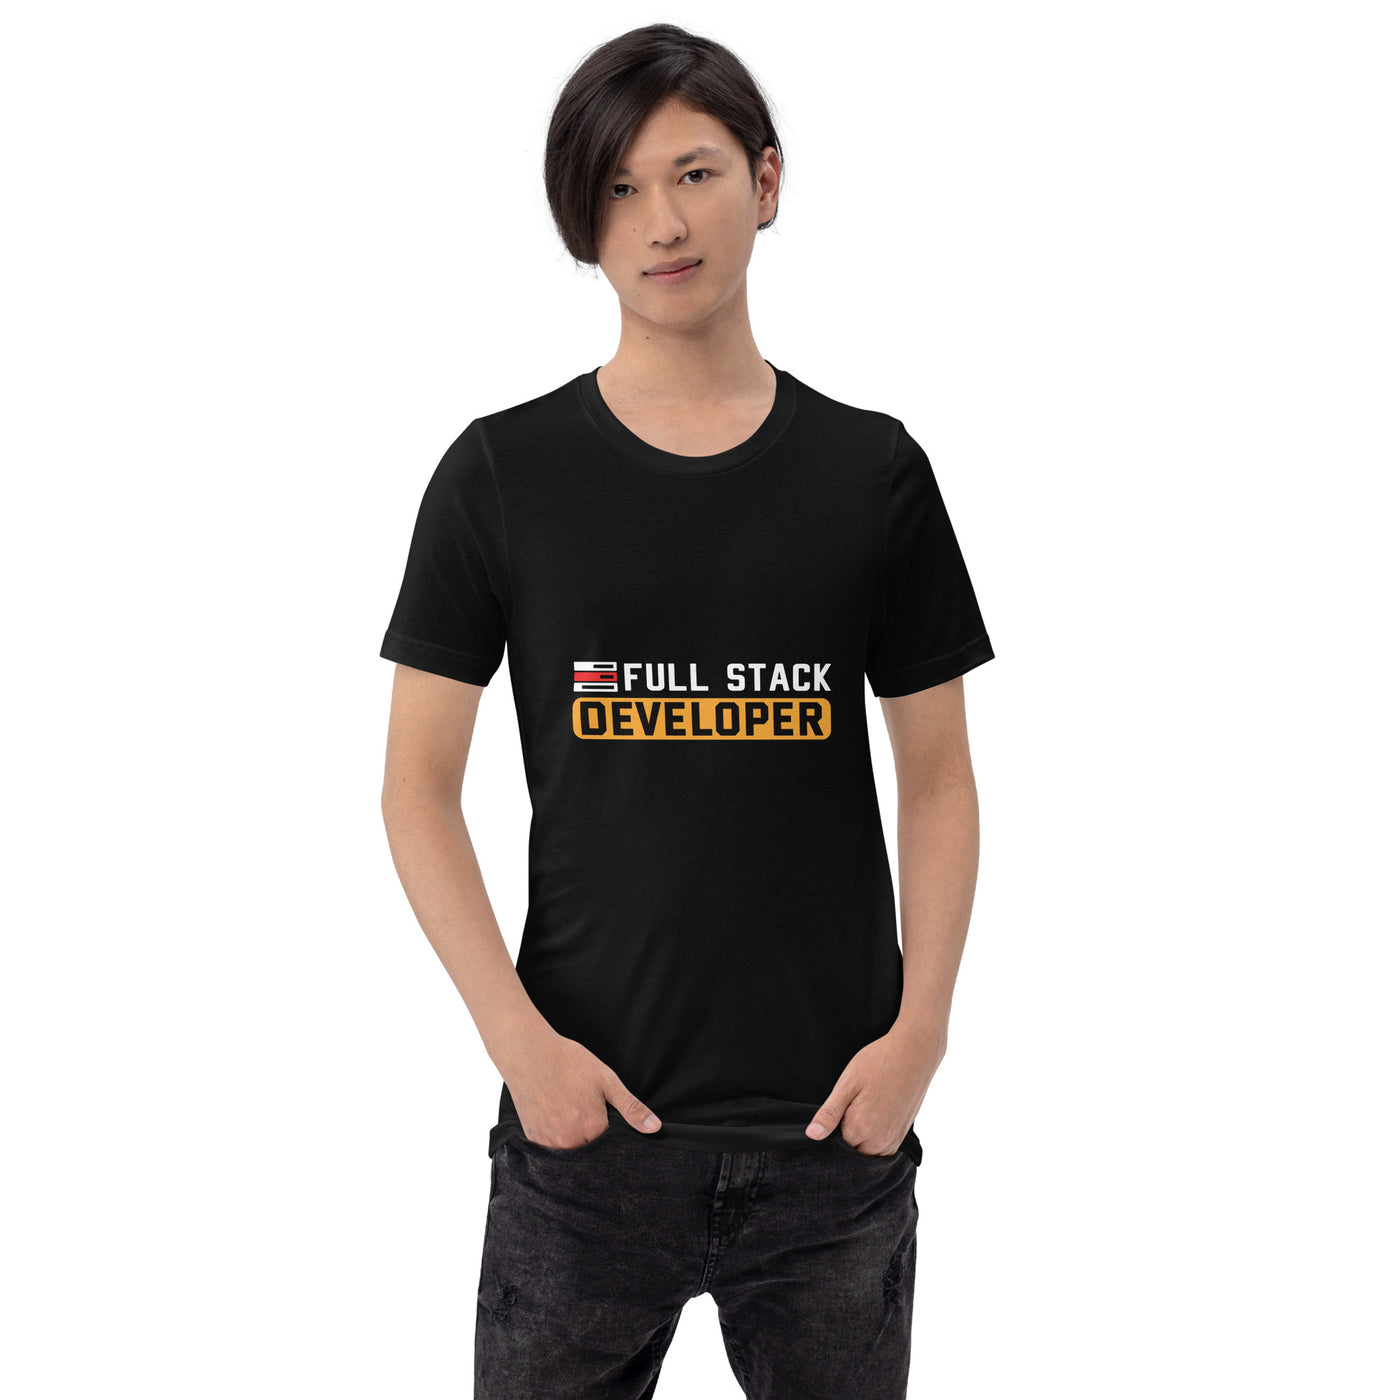 Full stack developer - Unisex t-shirt